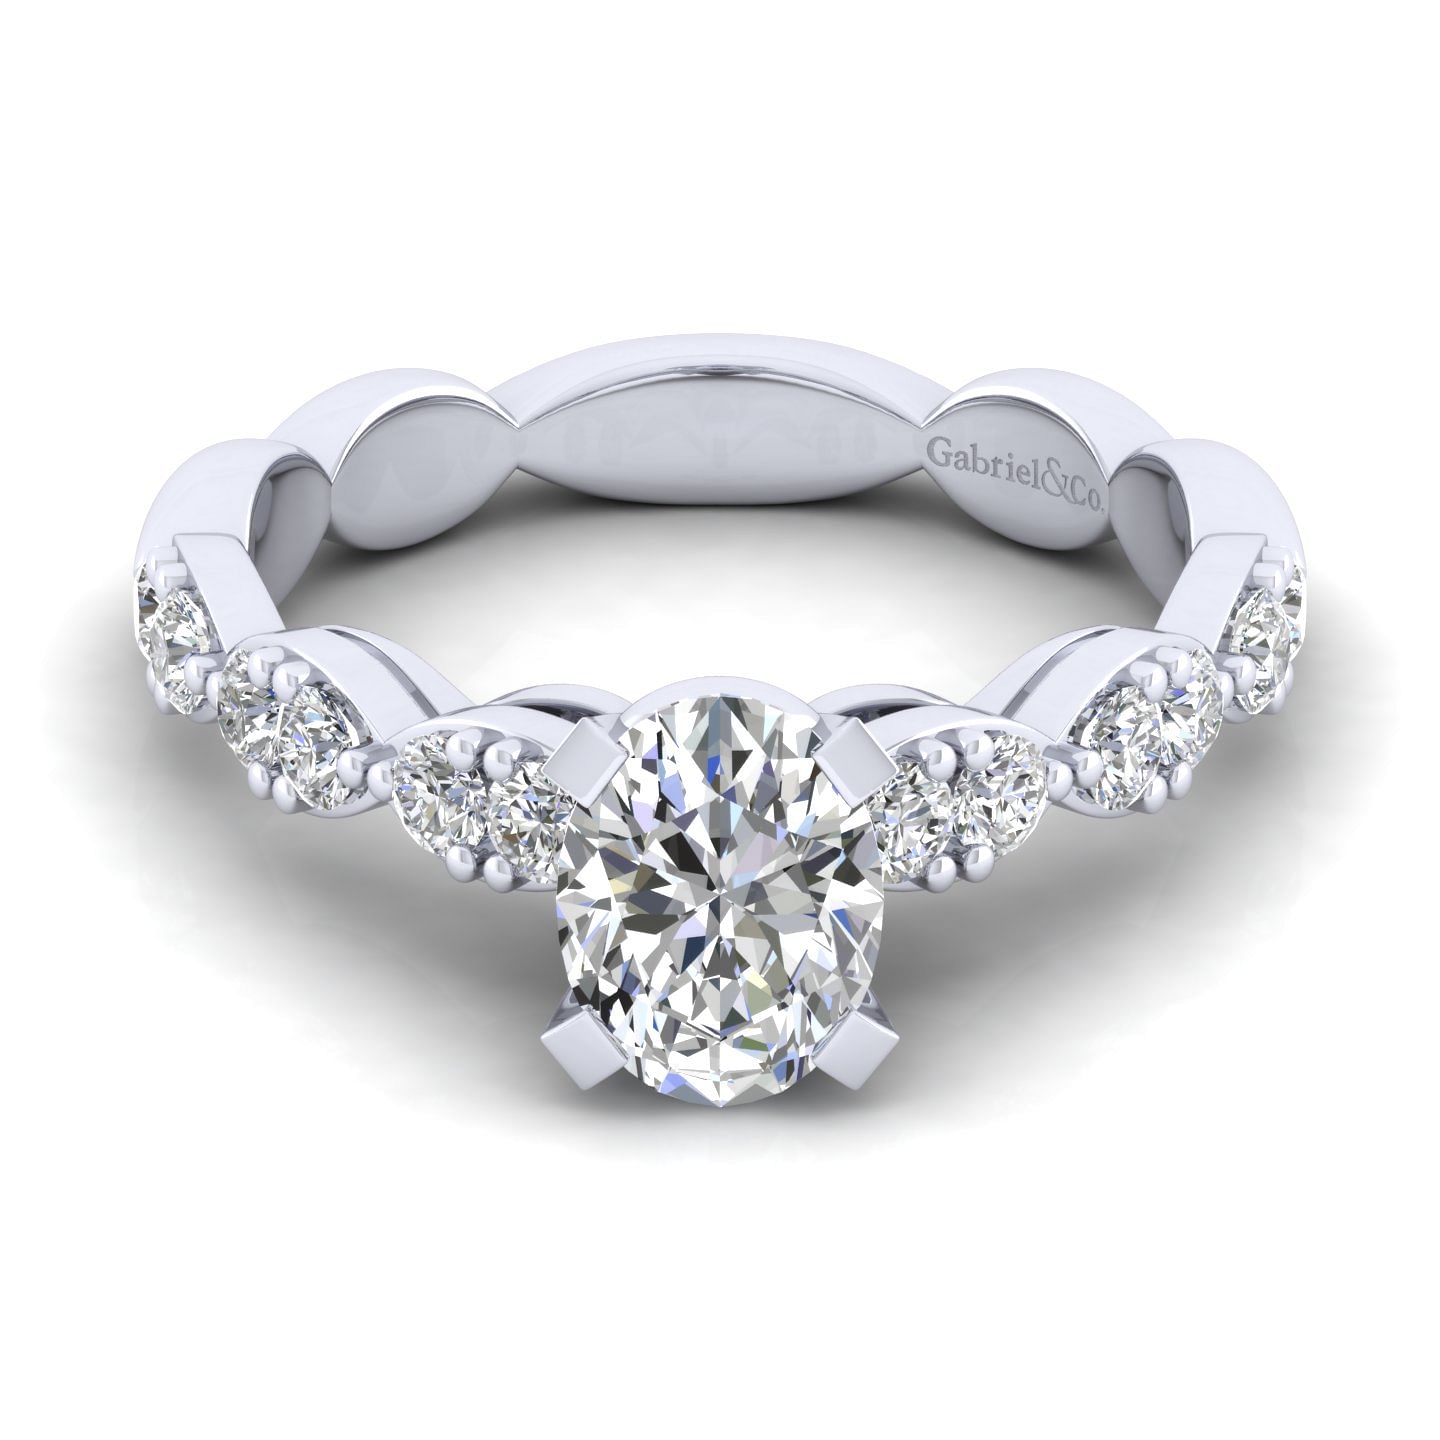 Rowan - 14K White Gold Oval Diamond Engagement Ring